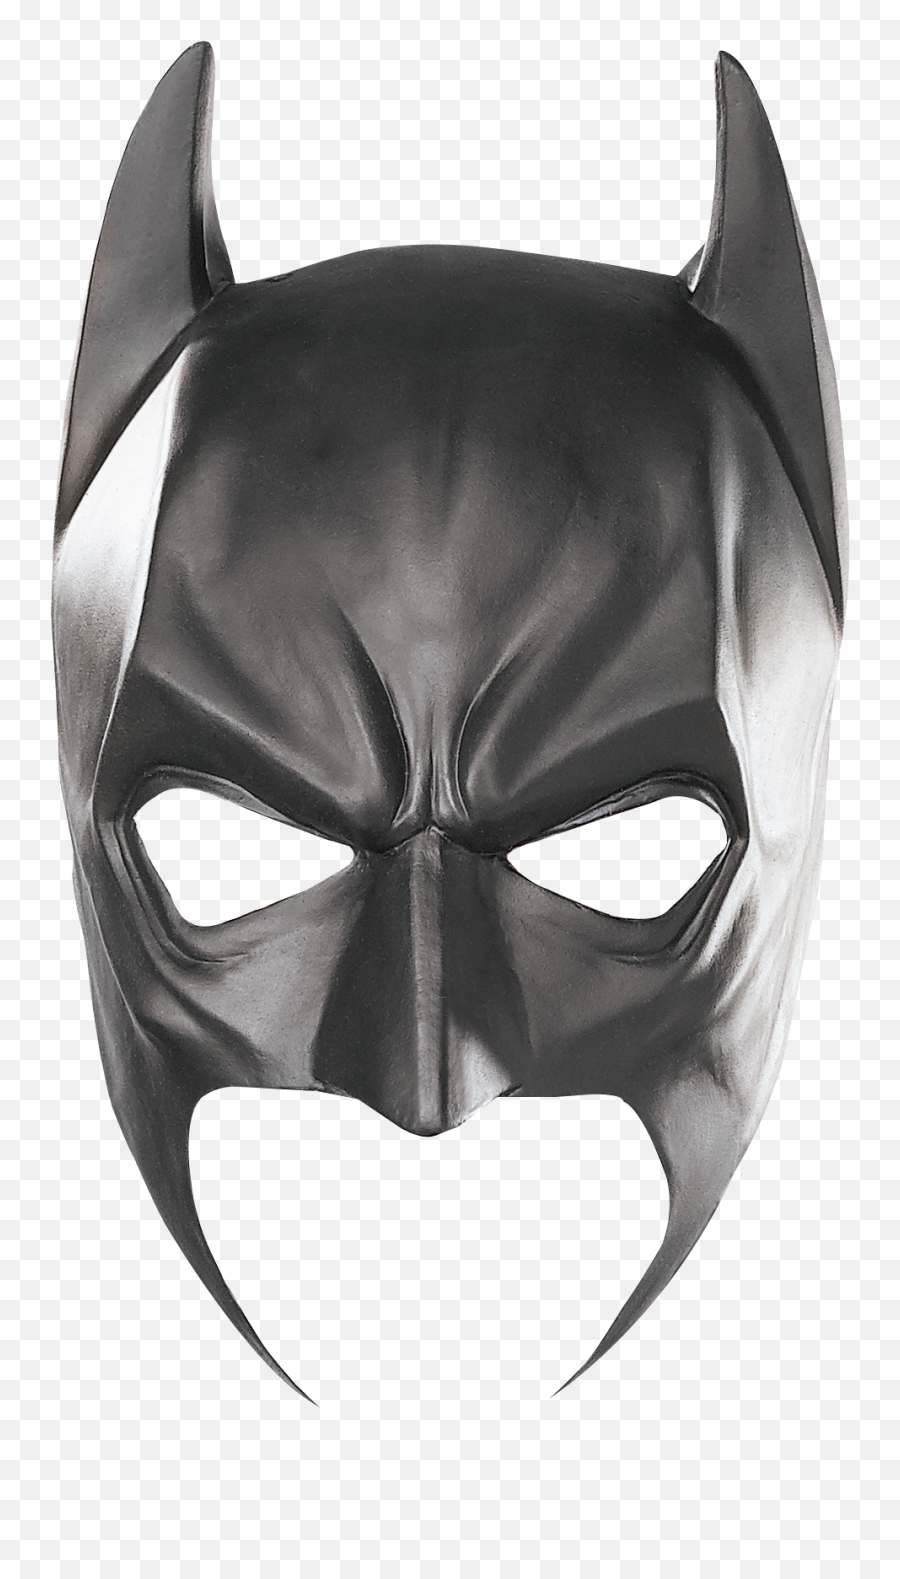 Batman Mask Png - Batman Mask Png,Black Mask Png